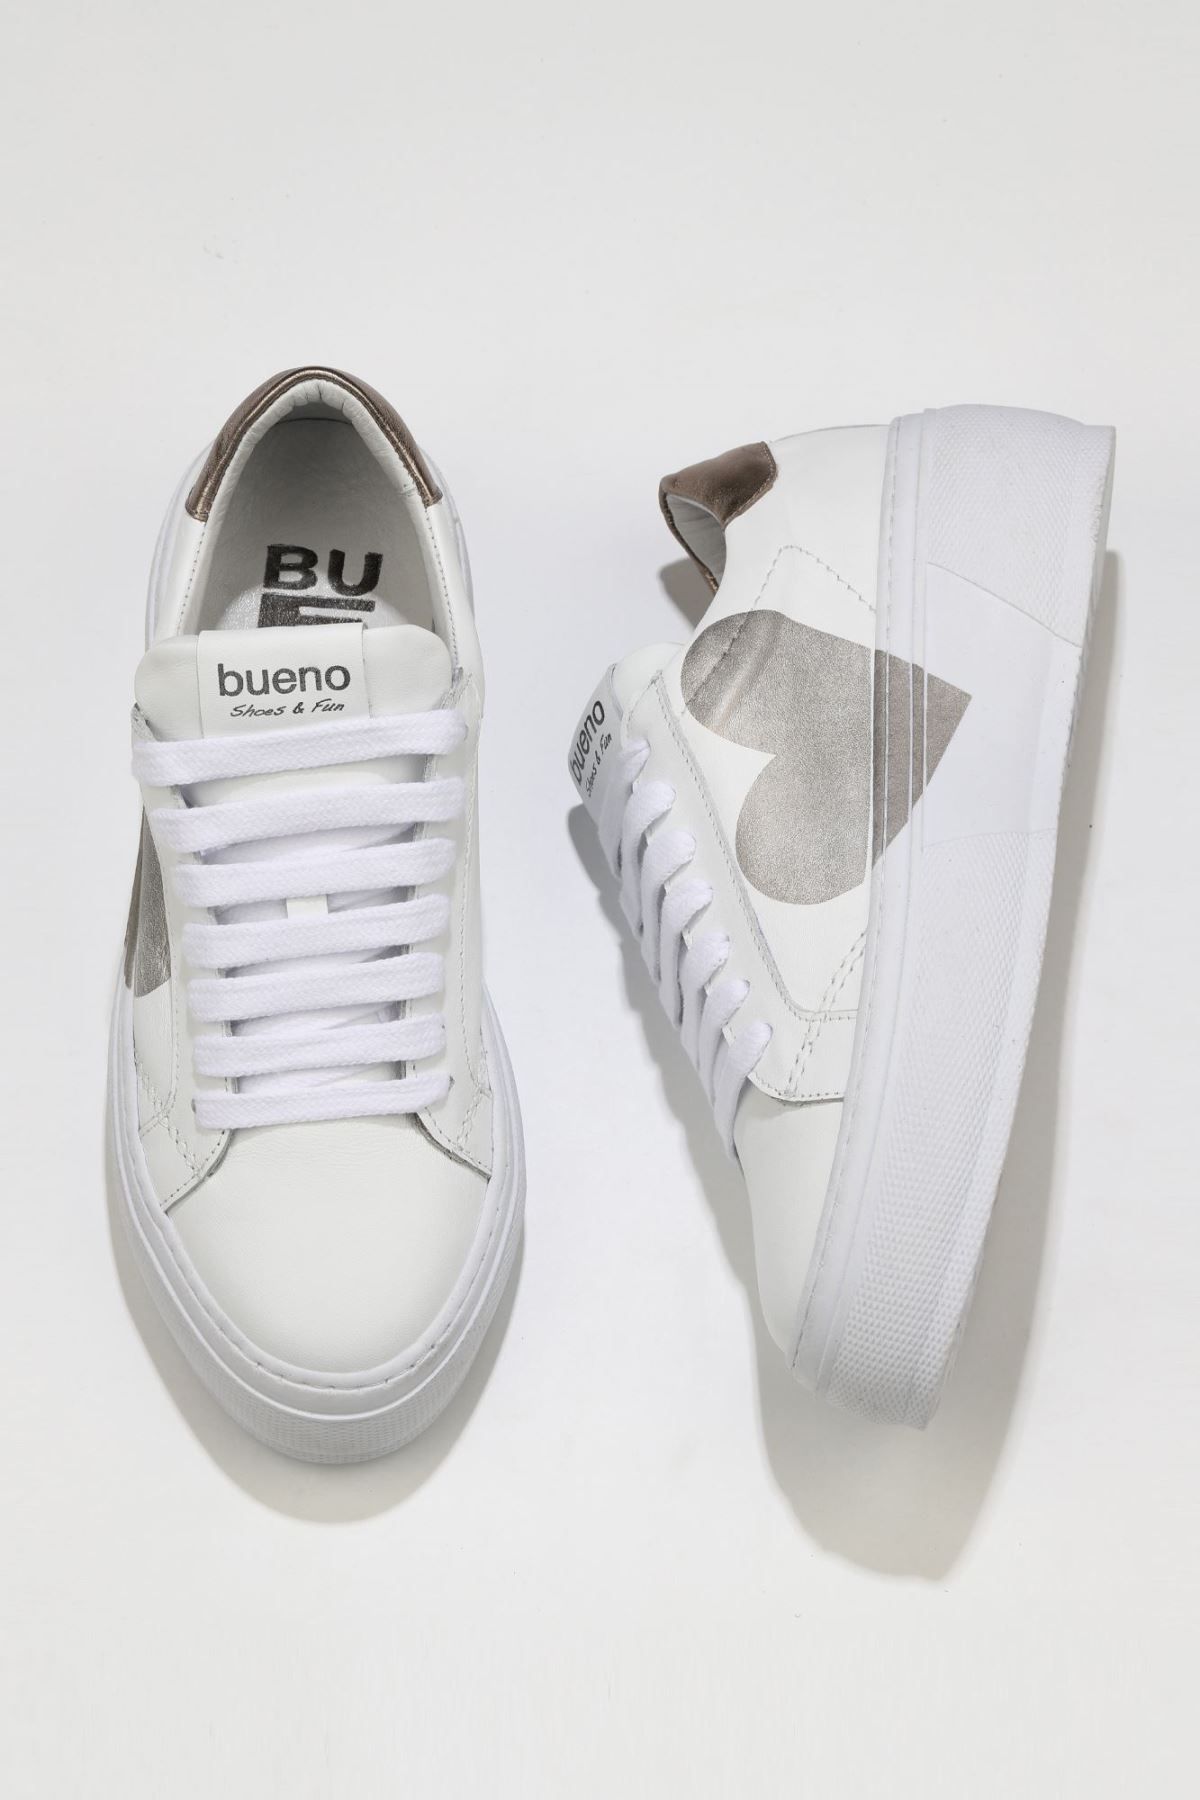 BUENO Shoes Beyaz B04c07 Kadın Dolgu Topuklu Spor Ayakkabı